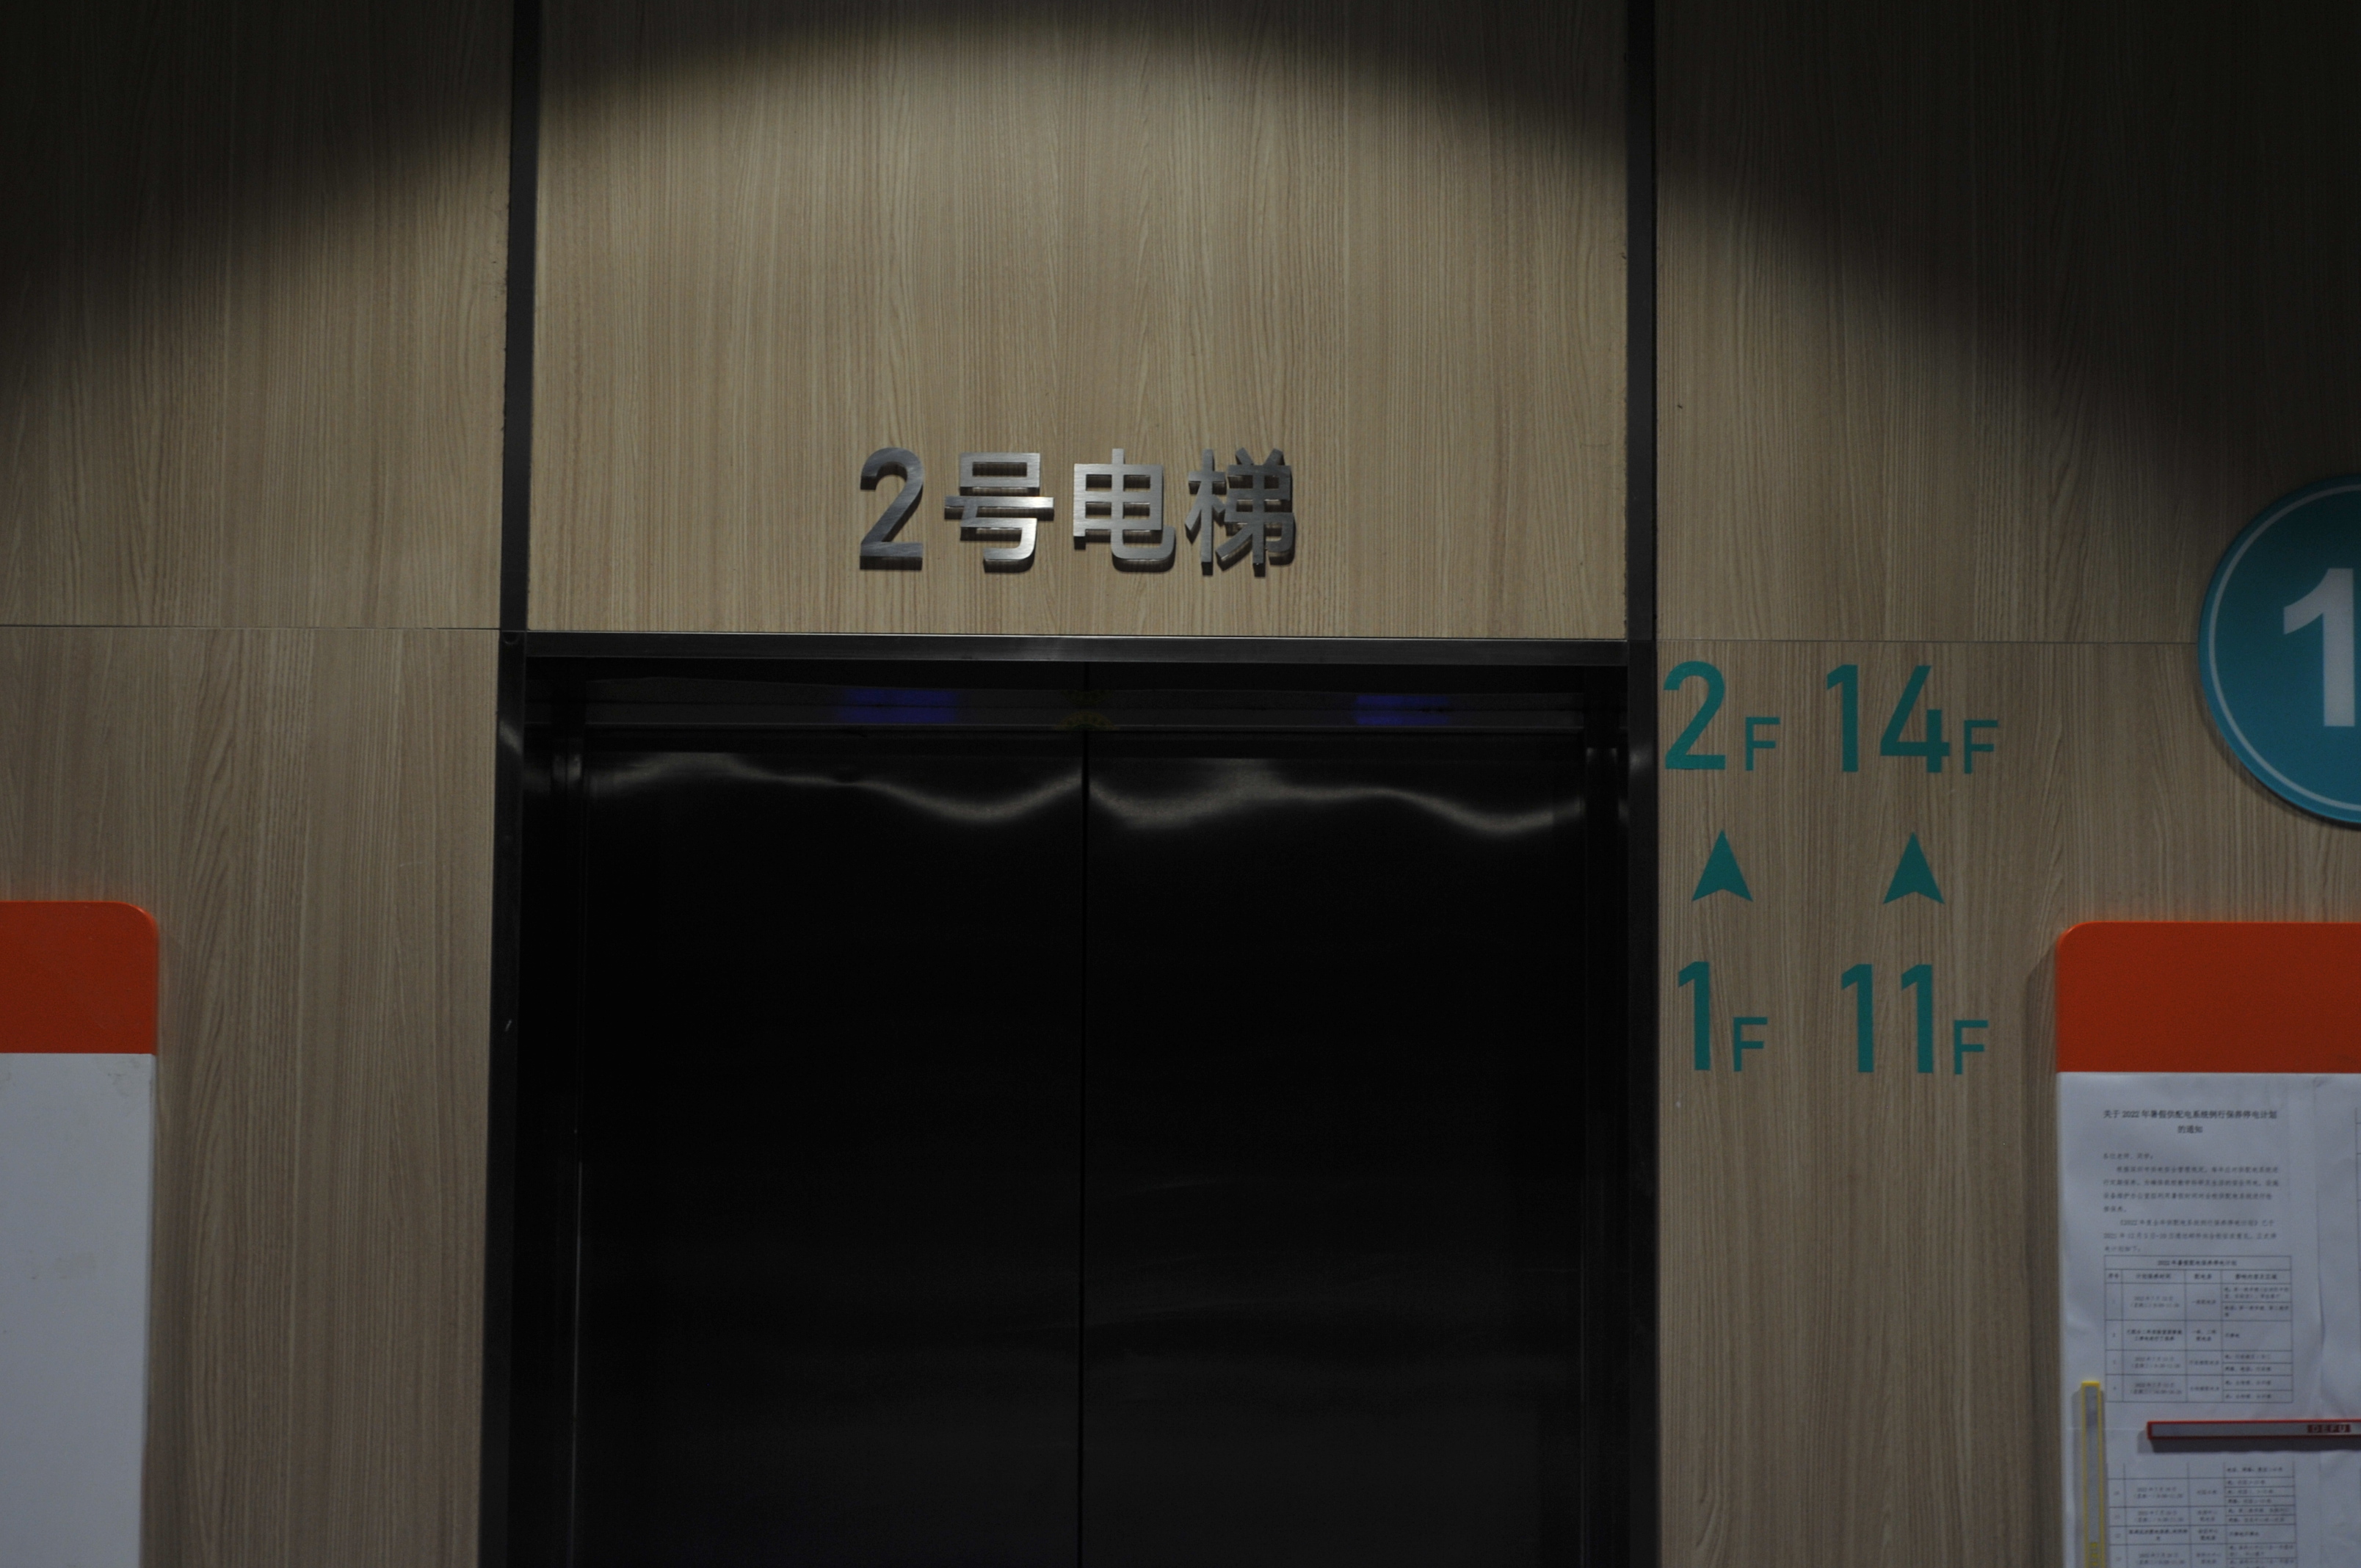 比如2号电梯可以到达1～2楼，11～14楼。